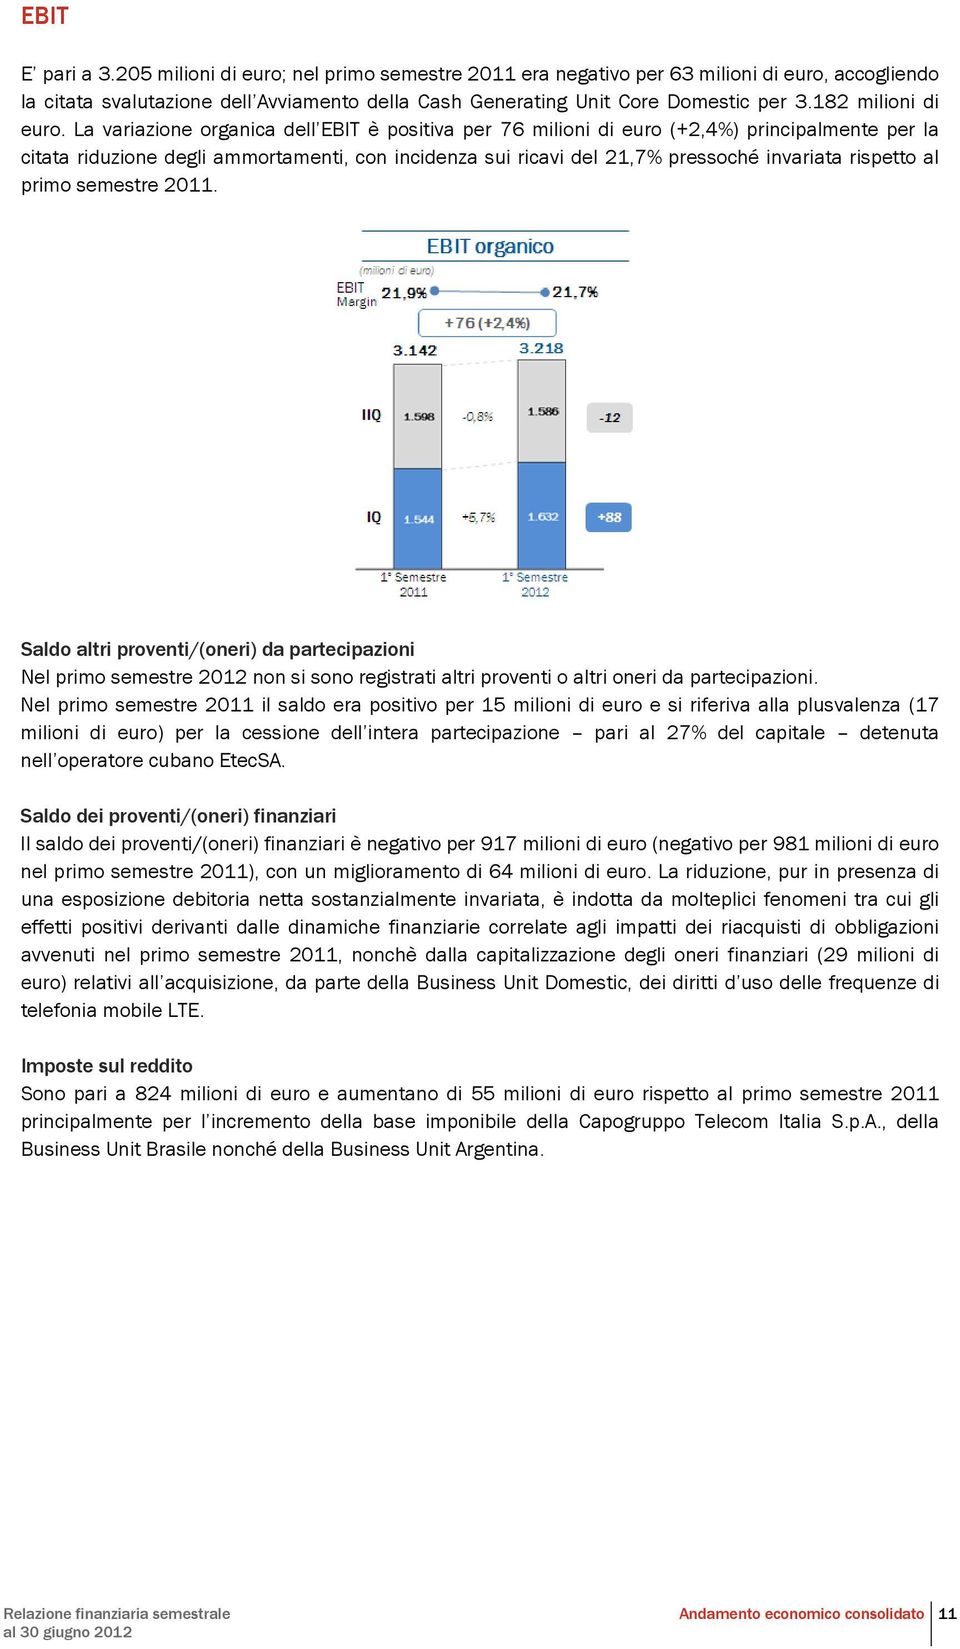 La variazione organica dell EBIT è positiva per 76 milioni di euro (+2,4%) principalmente per la citata riduzione degli ammortamenti, con incidenza sui ricavi del 21,7% pressoché invariata rispetto